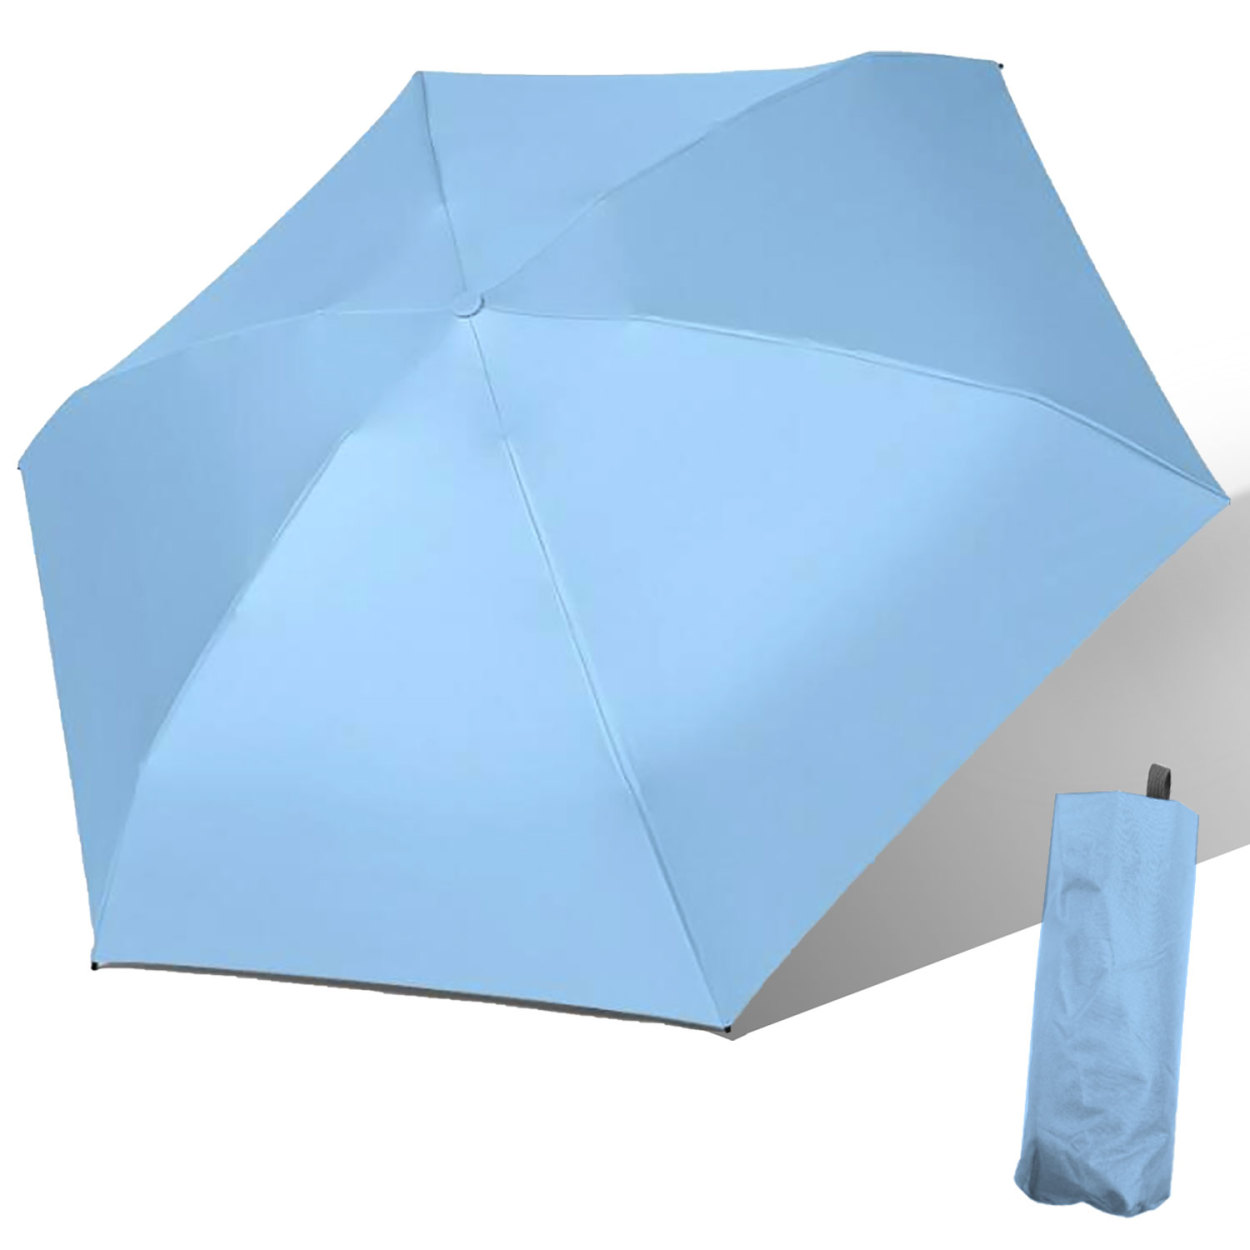 晴雨兼用折り畳み傘 軽量 折りたたみ傘 UVカット 日傘 レディース 完全遮光 遮光率 100% メ...